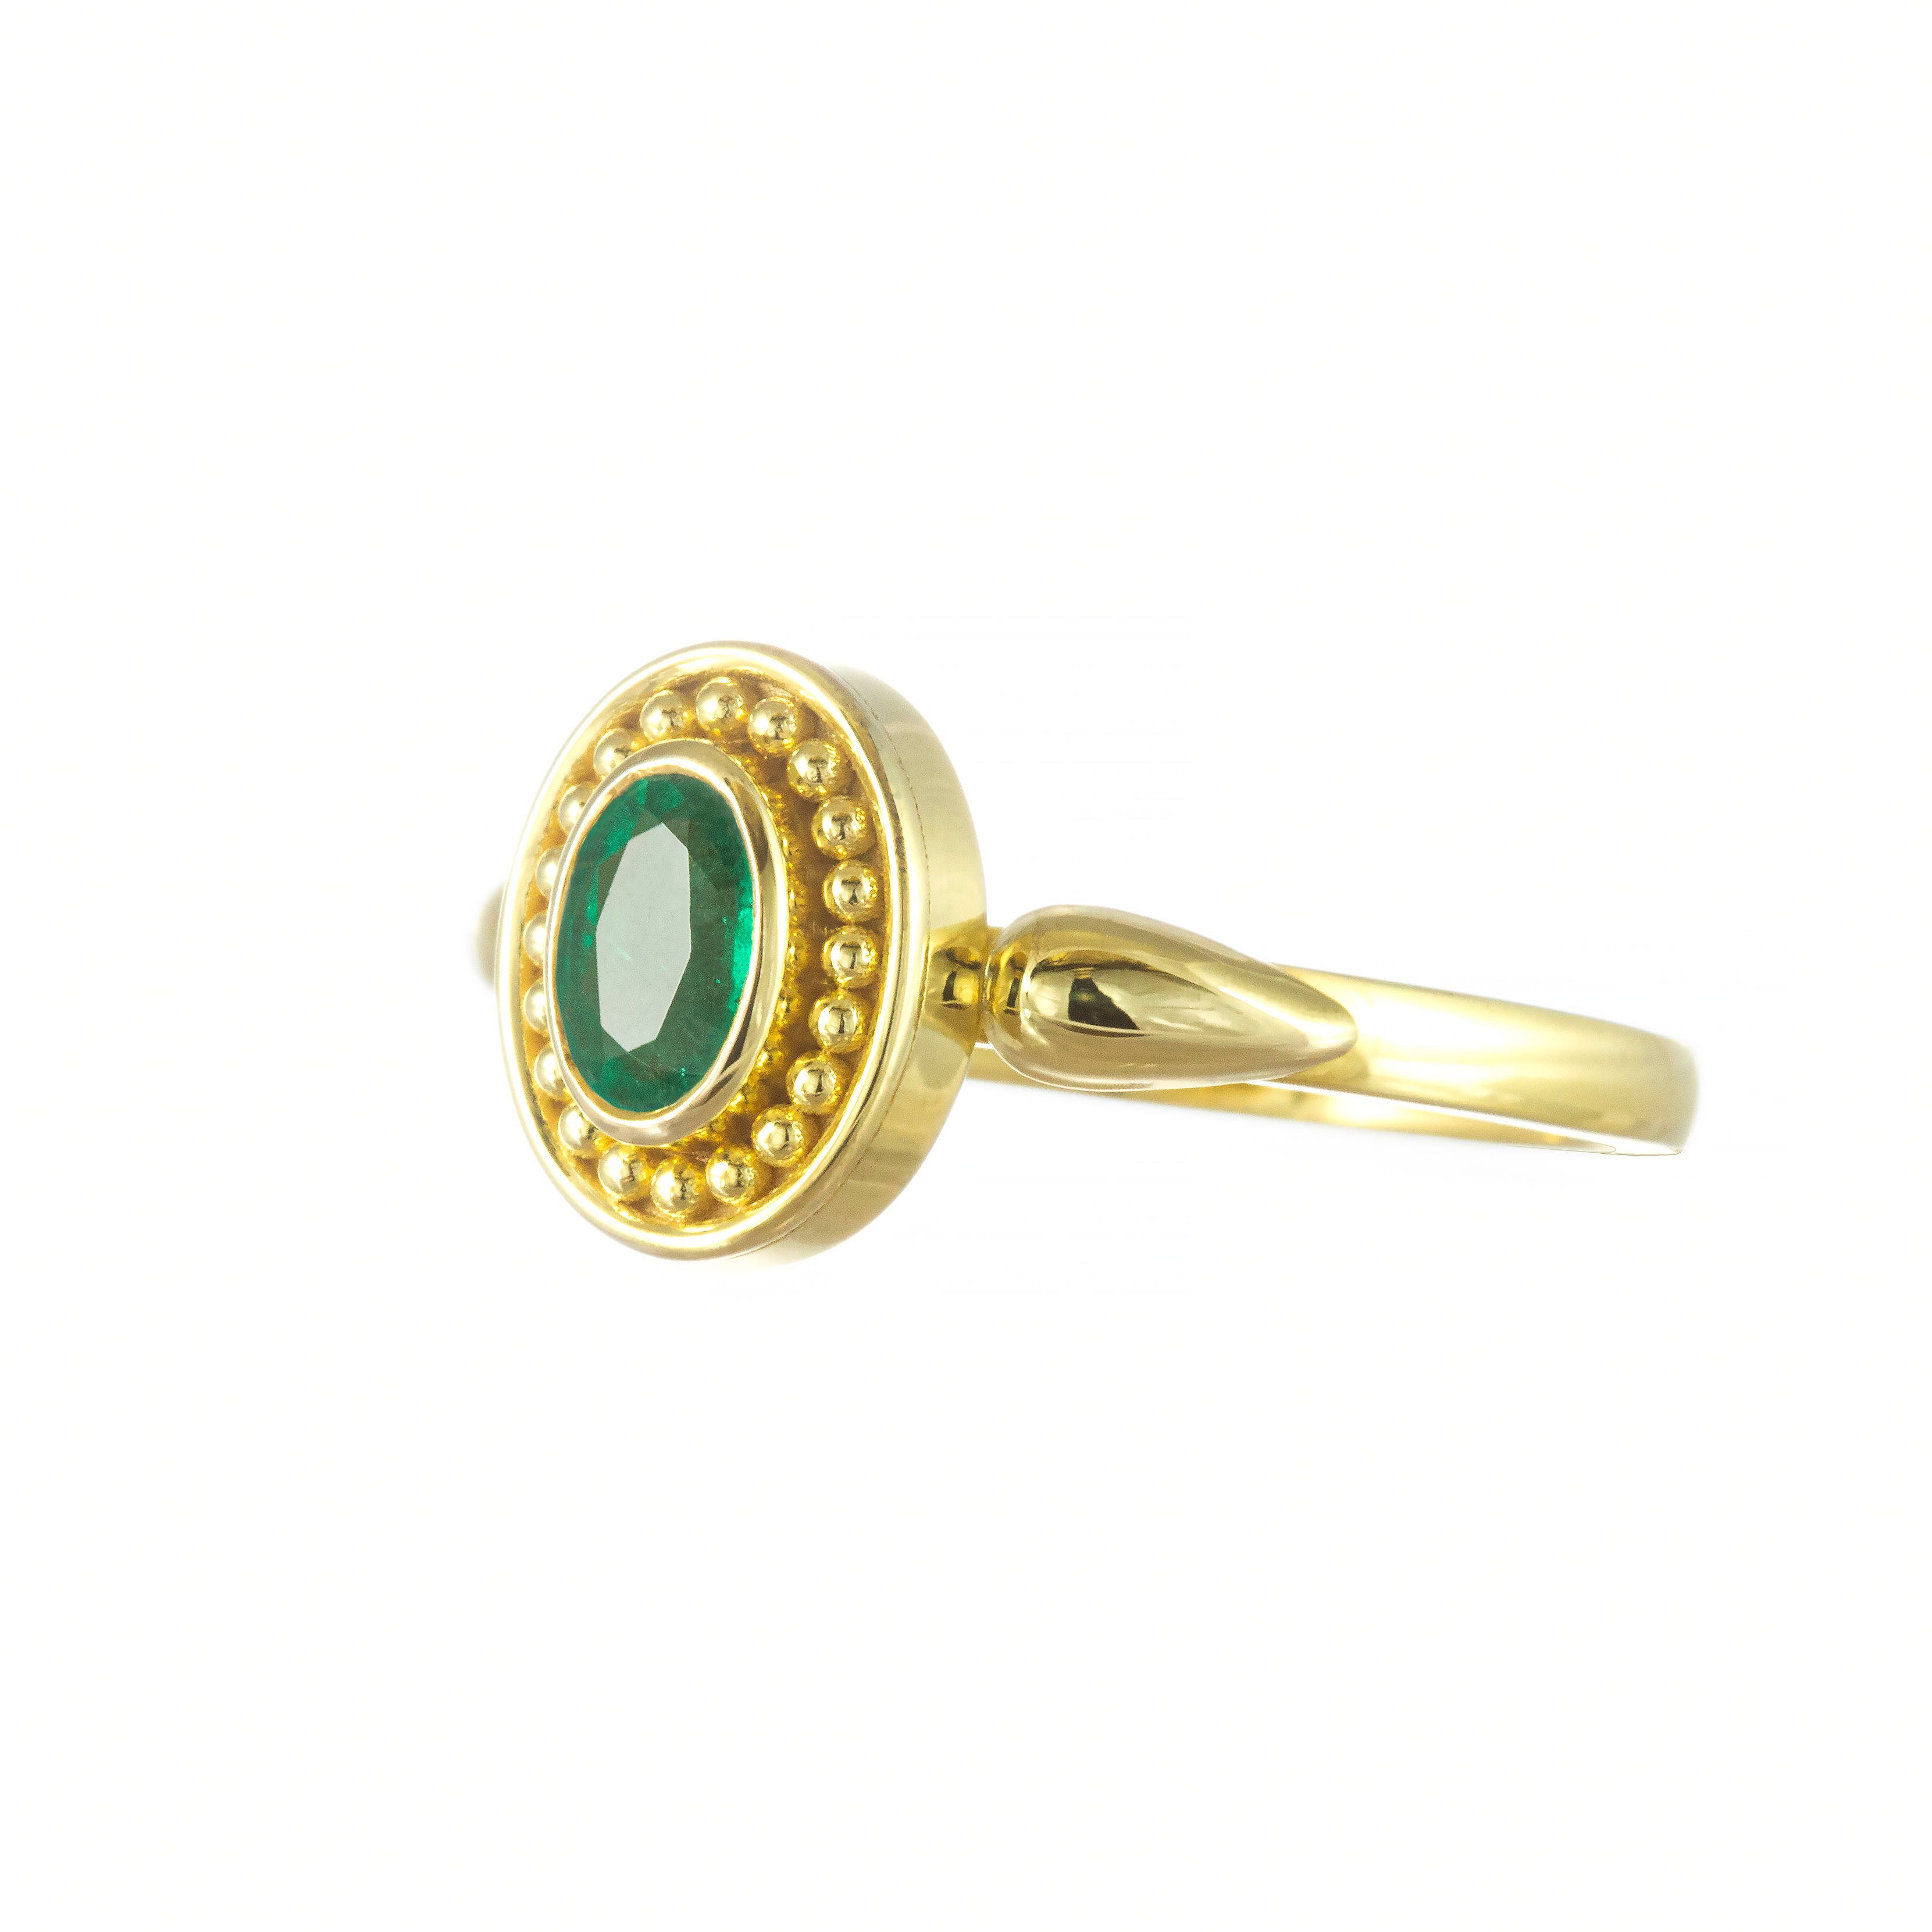 Gold Byzantine Ring with Emerald Odysseus Jewelry